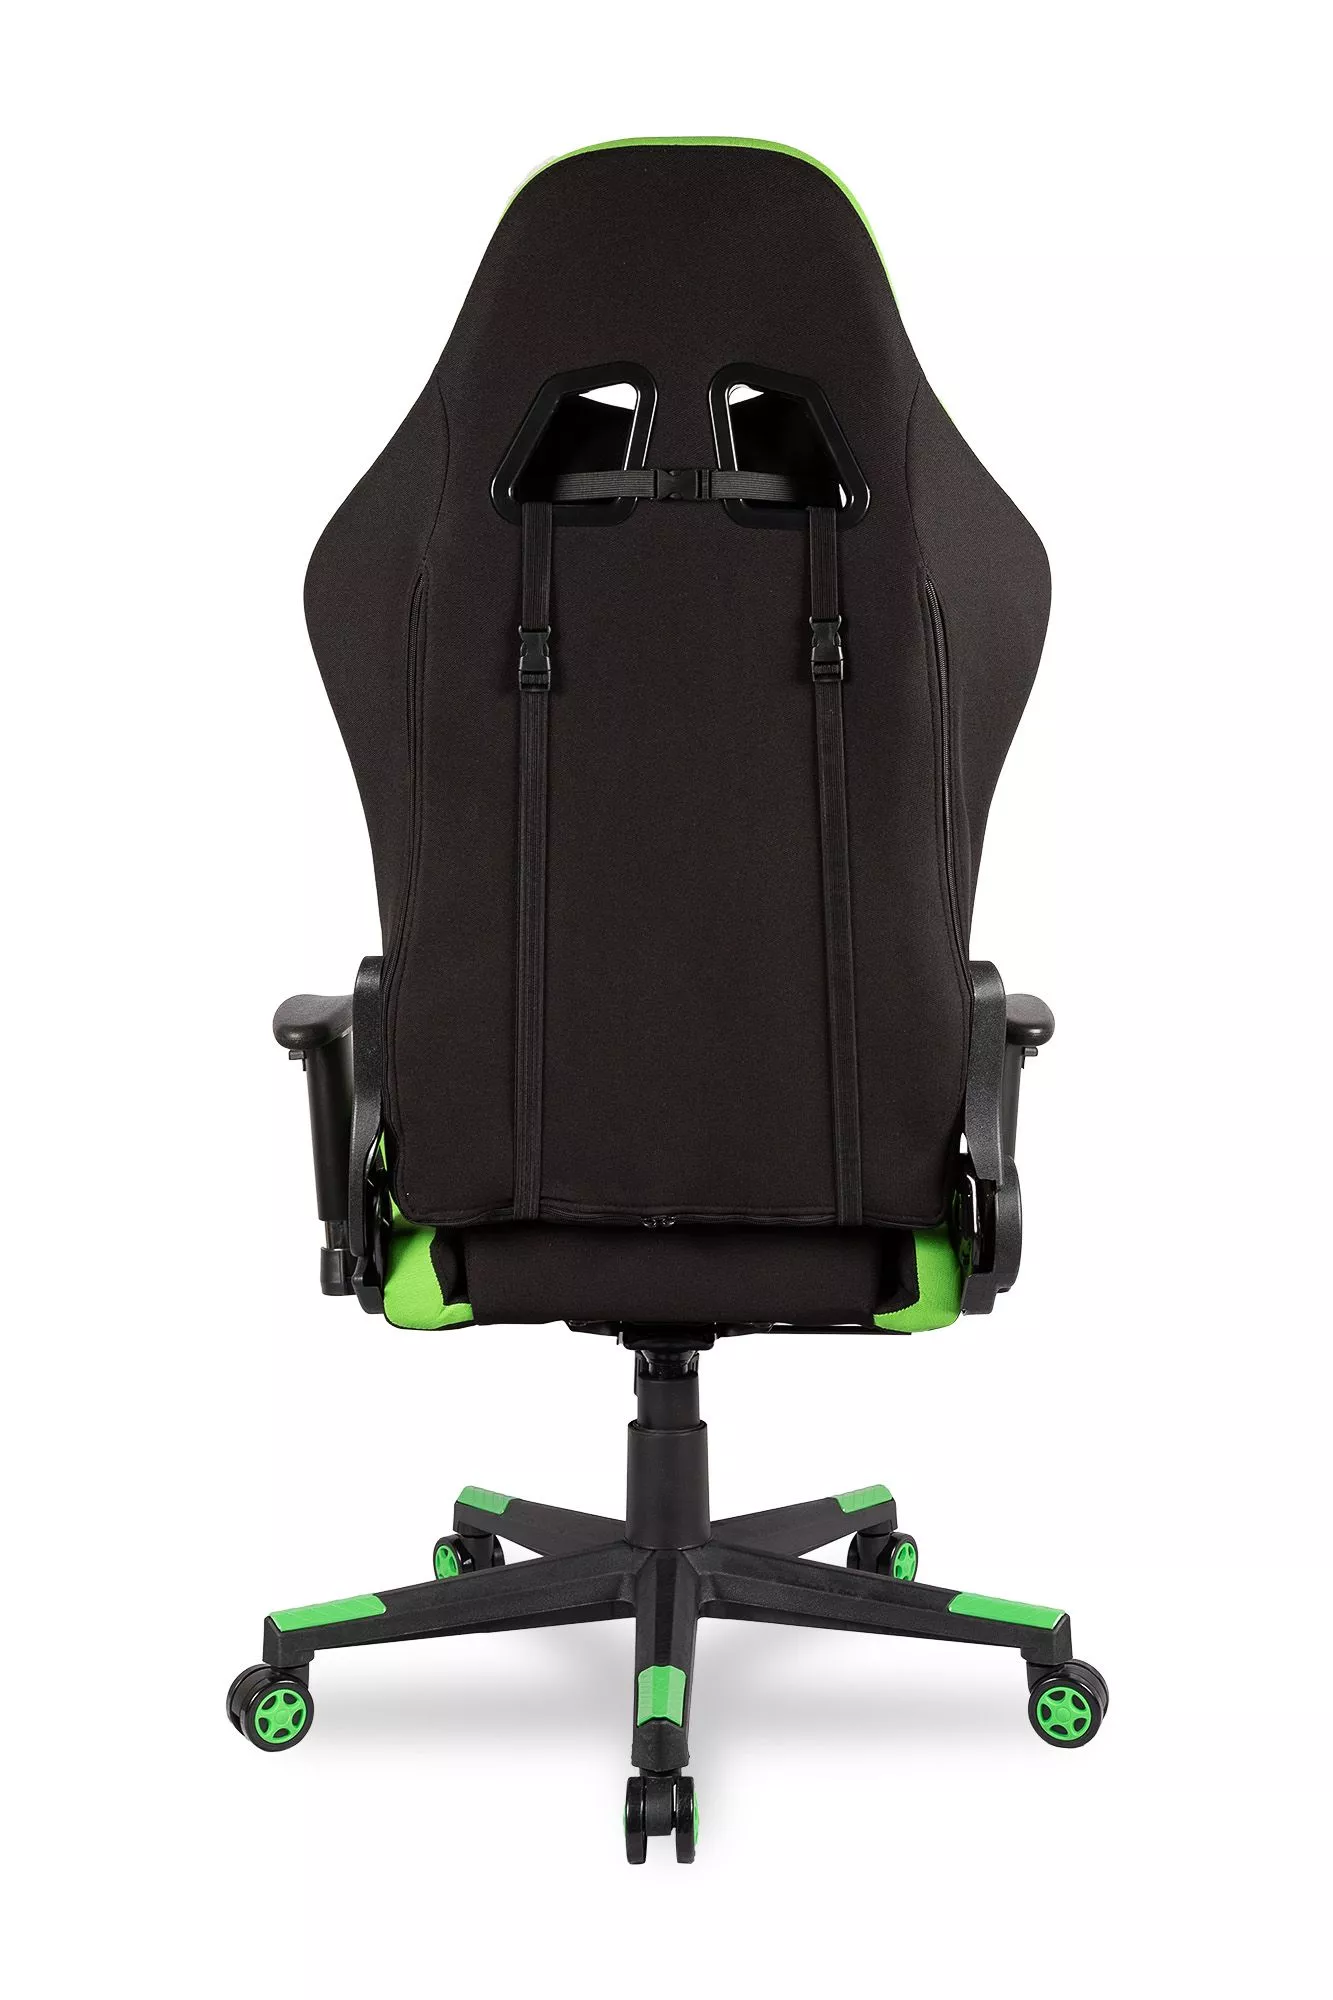 Геймерское кресло College BX-3760 Черный зеленый